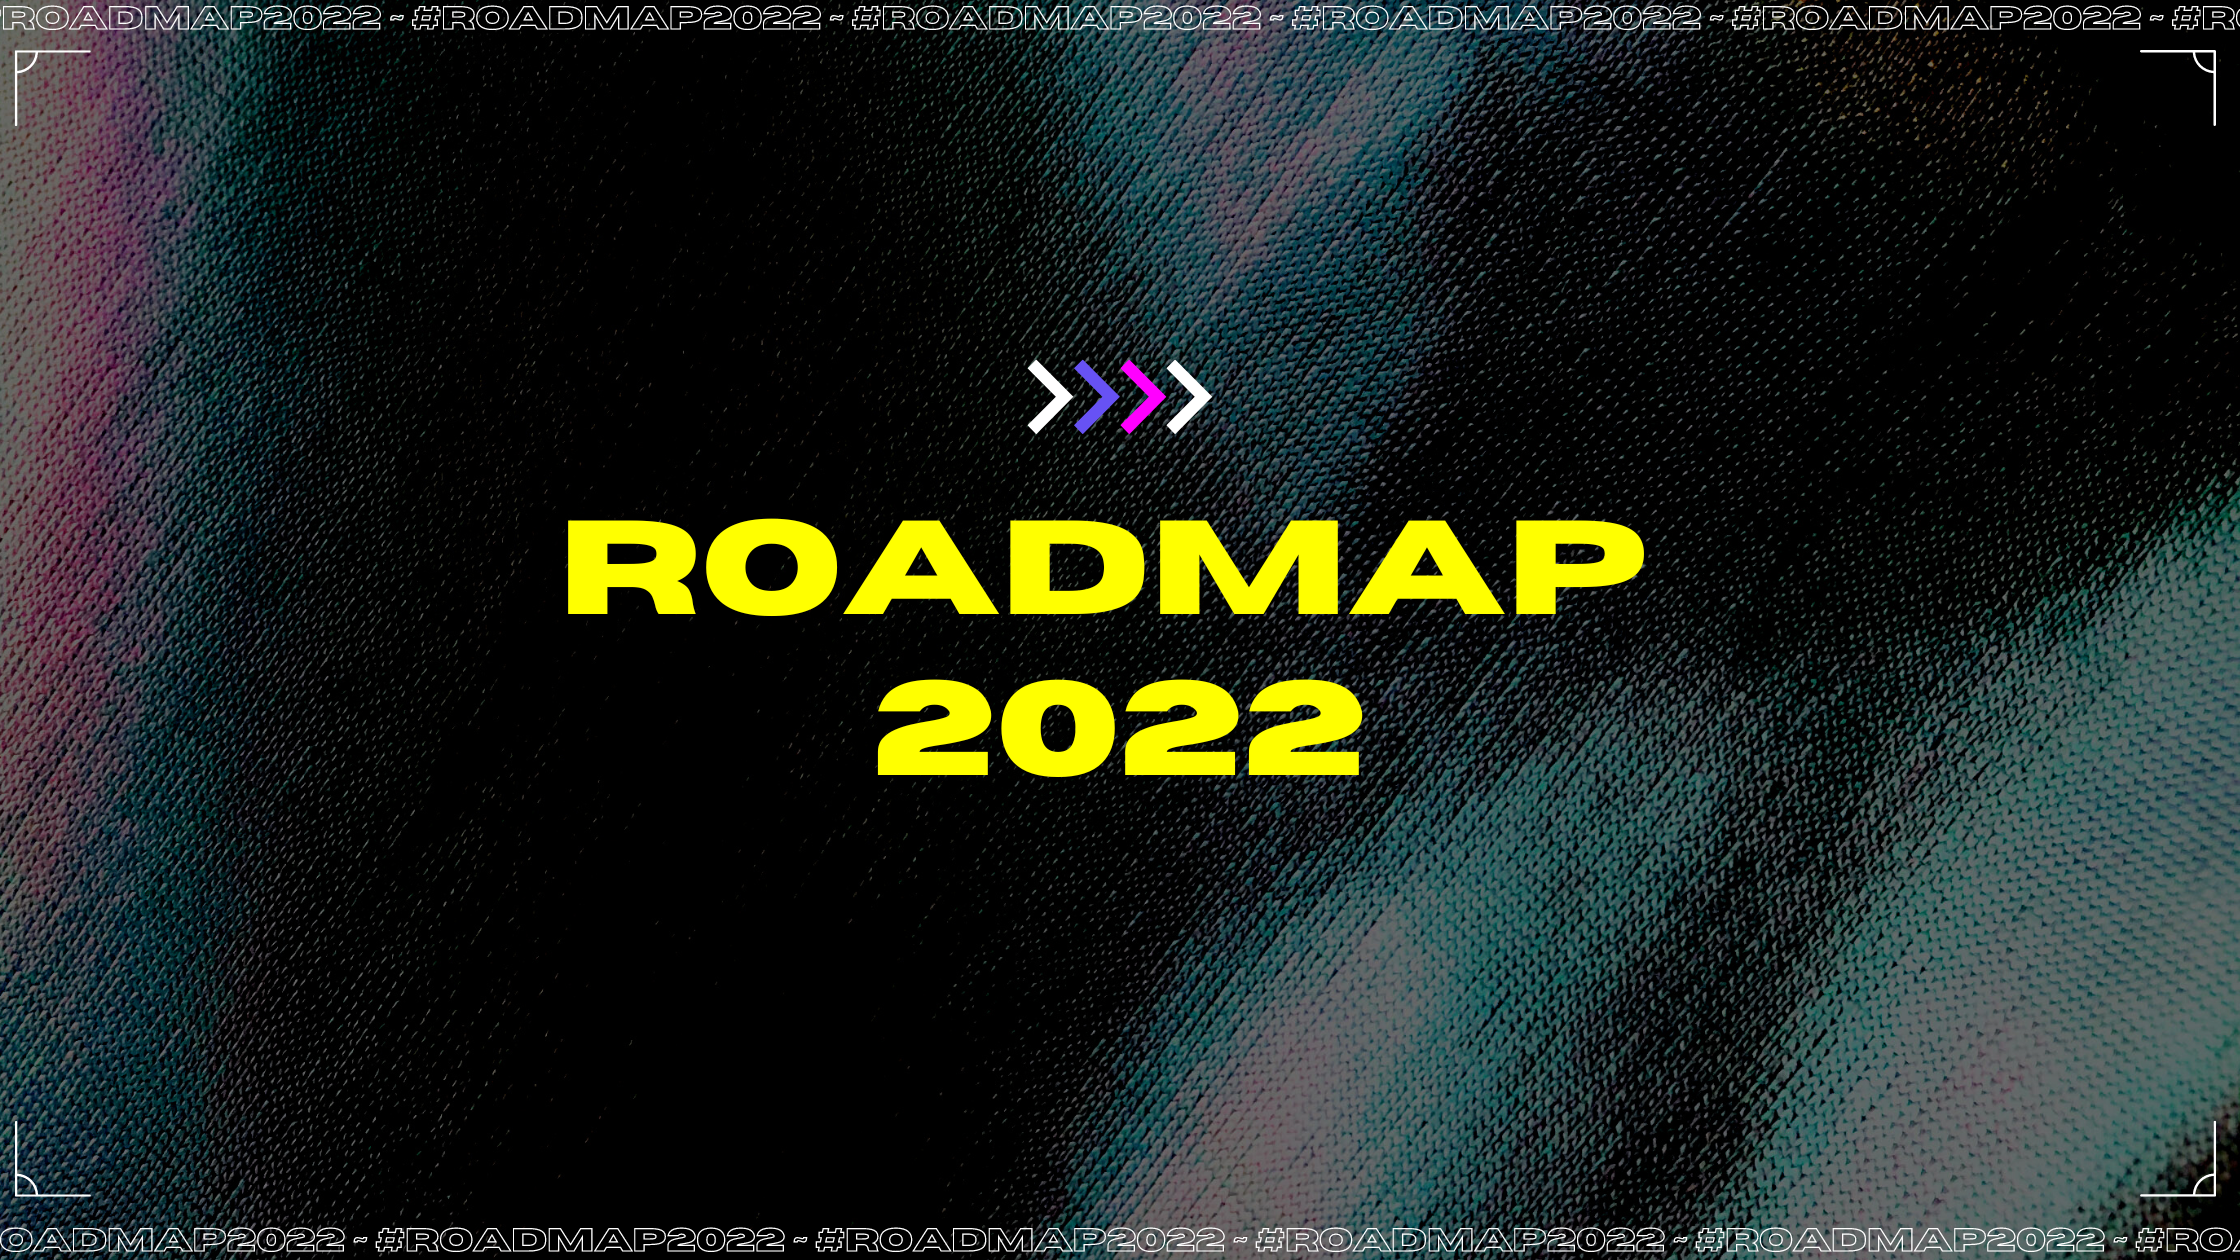 Roadmap 2022 is here. 